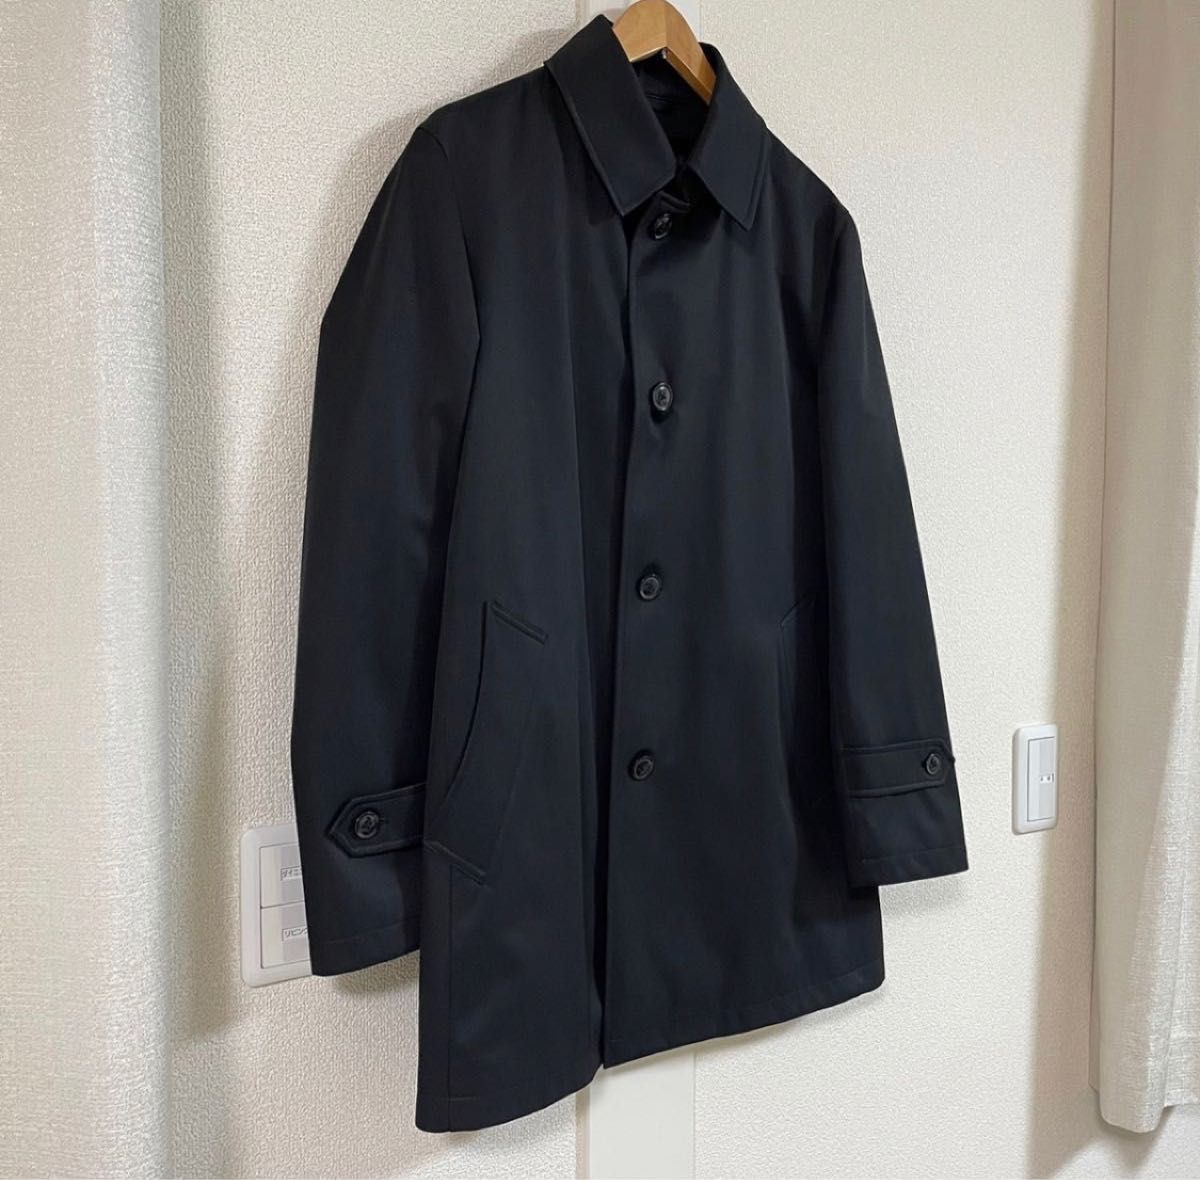 BL ステンカラーボンディングコート ブラック×シャドーツイル ジャケット スーツ 通勤 移動 ビジネス